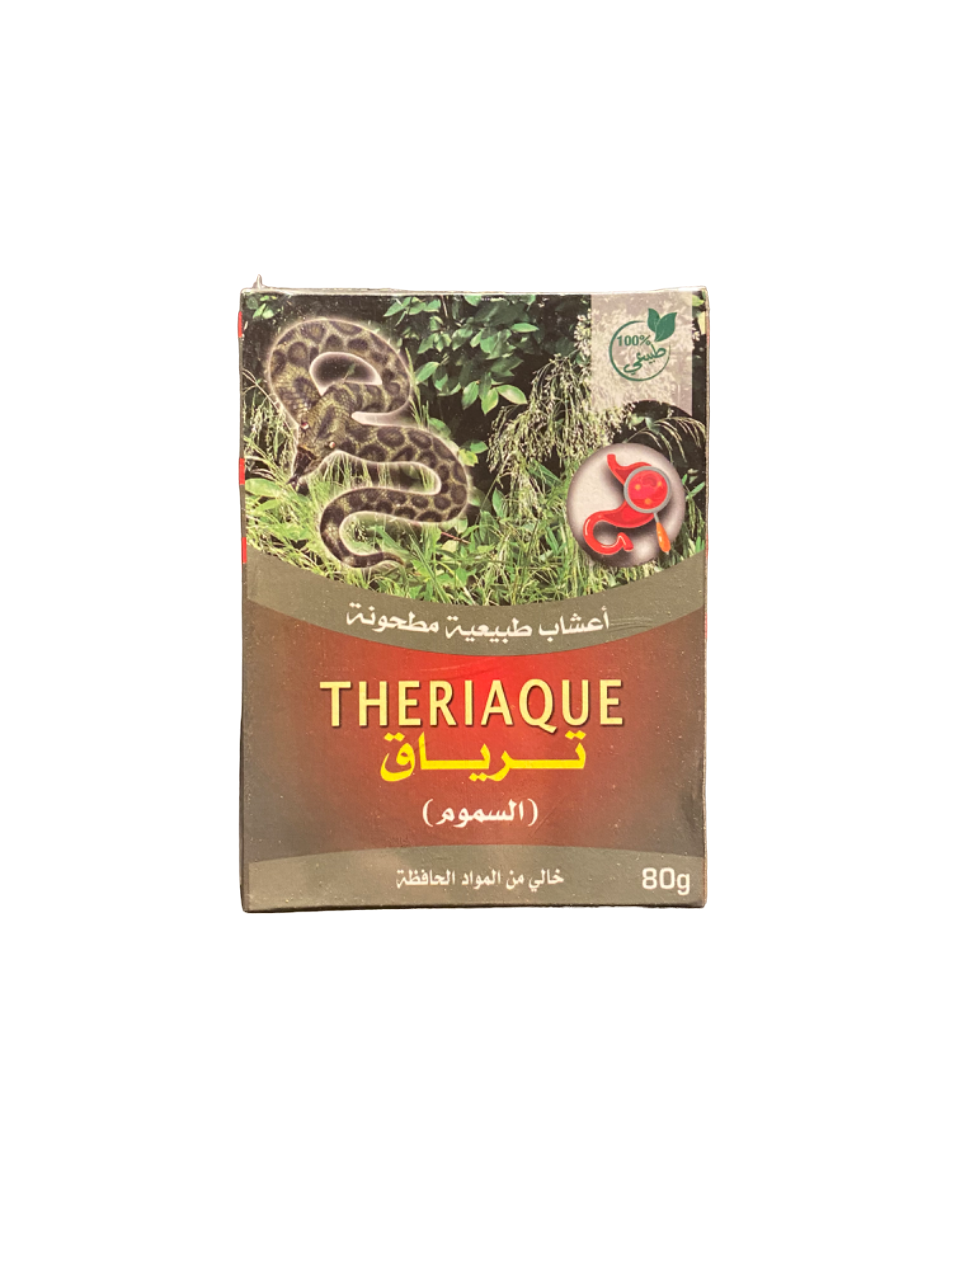 Theriaque - 80g - solution naturelle contre intoxication alimentaire ou sorcellerie - ترياق